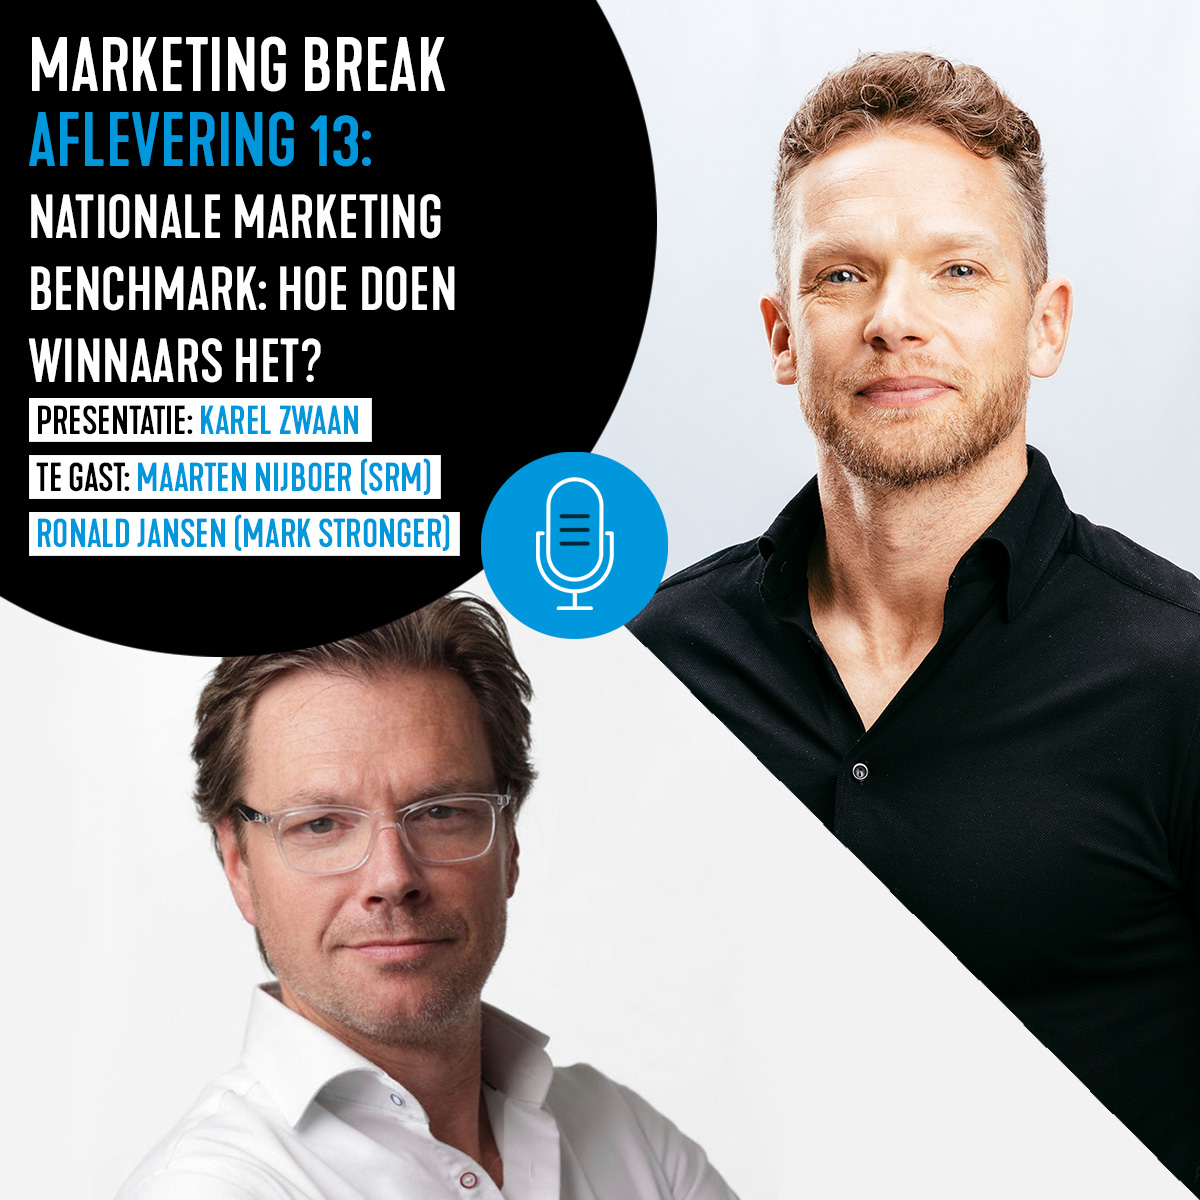 Nationale Marketing Benchmark: hoe doen winnaars het?